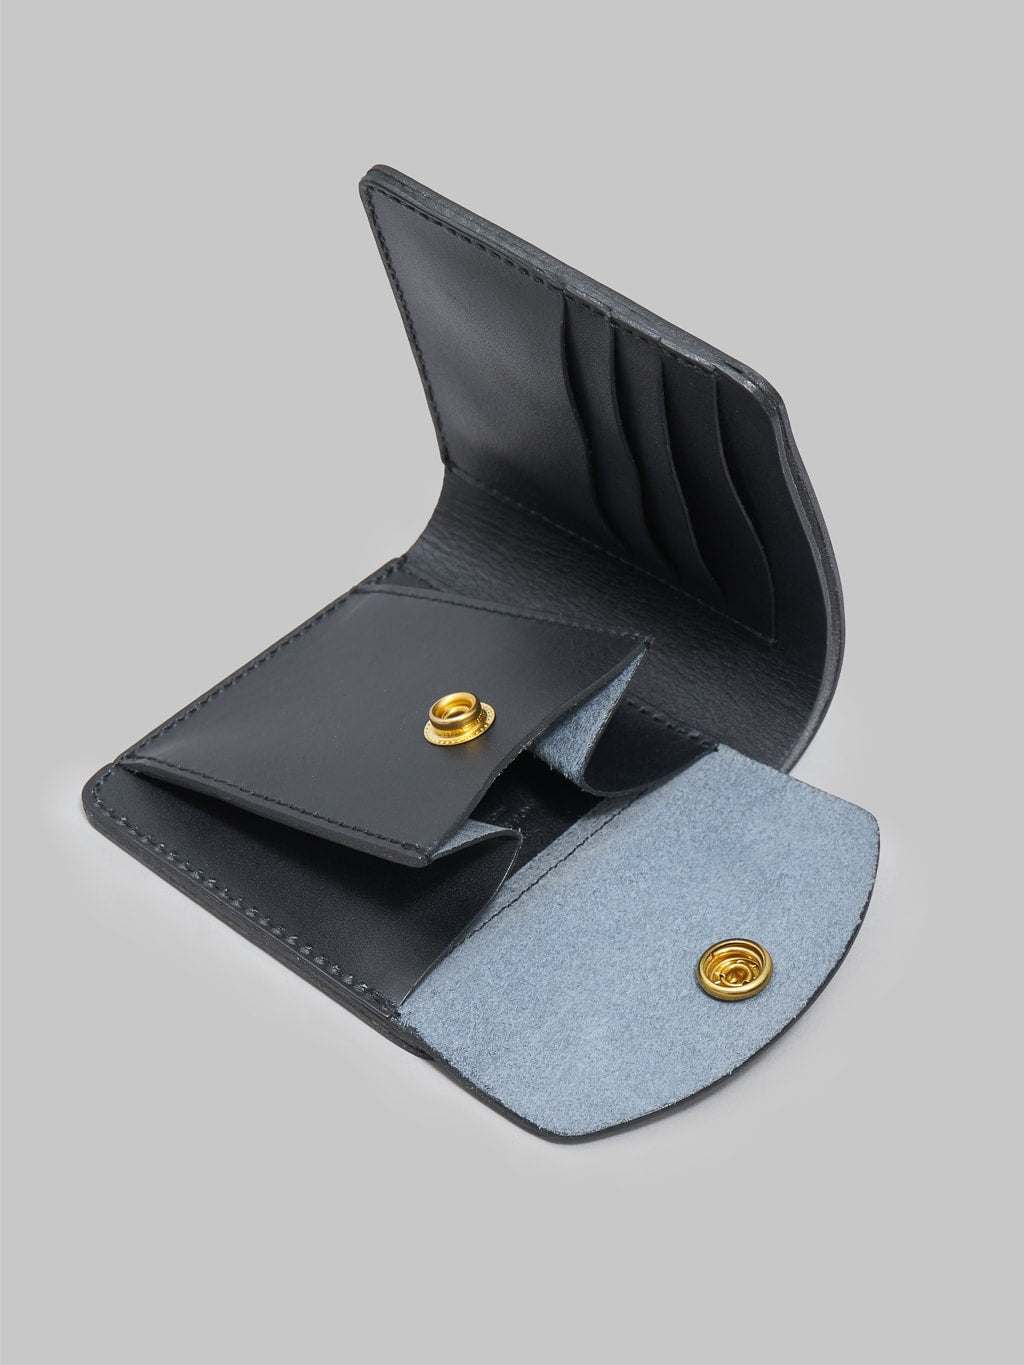 Kobashi Studio premium Leather Fold Wallet Black inside details